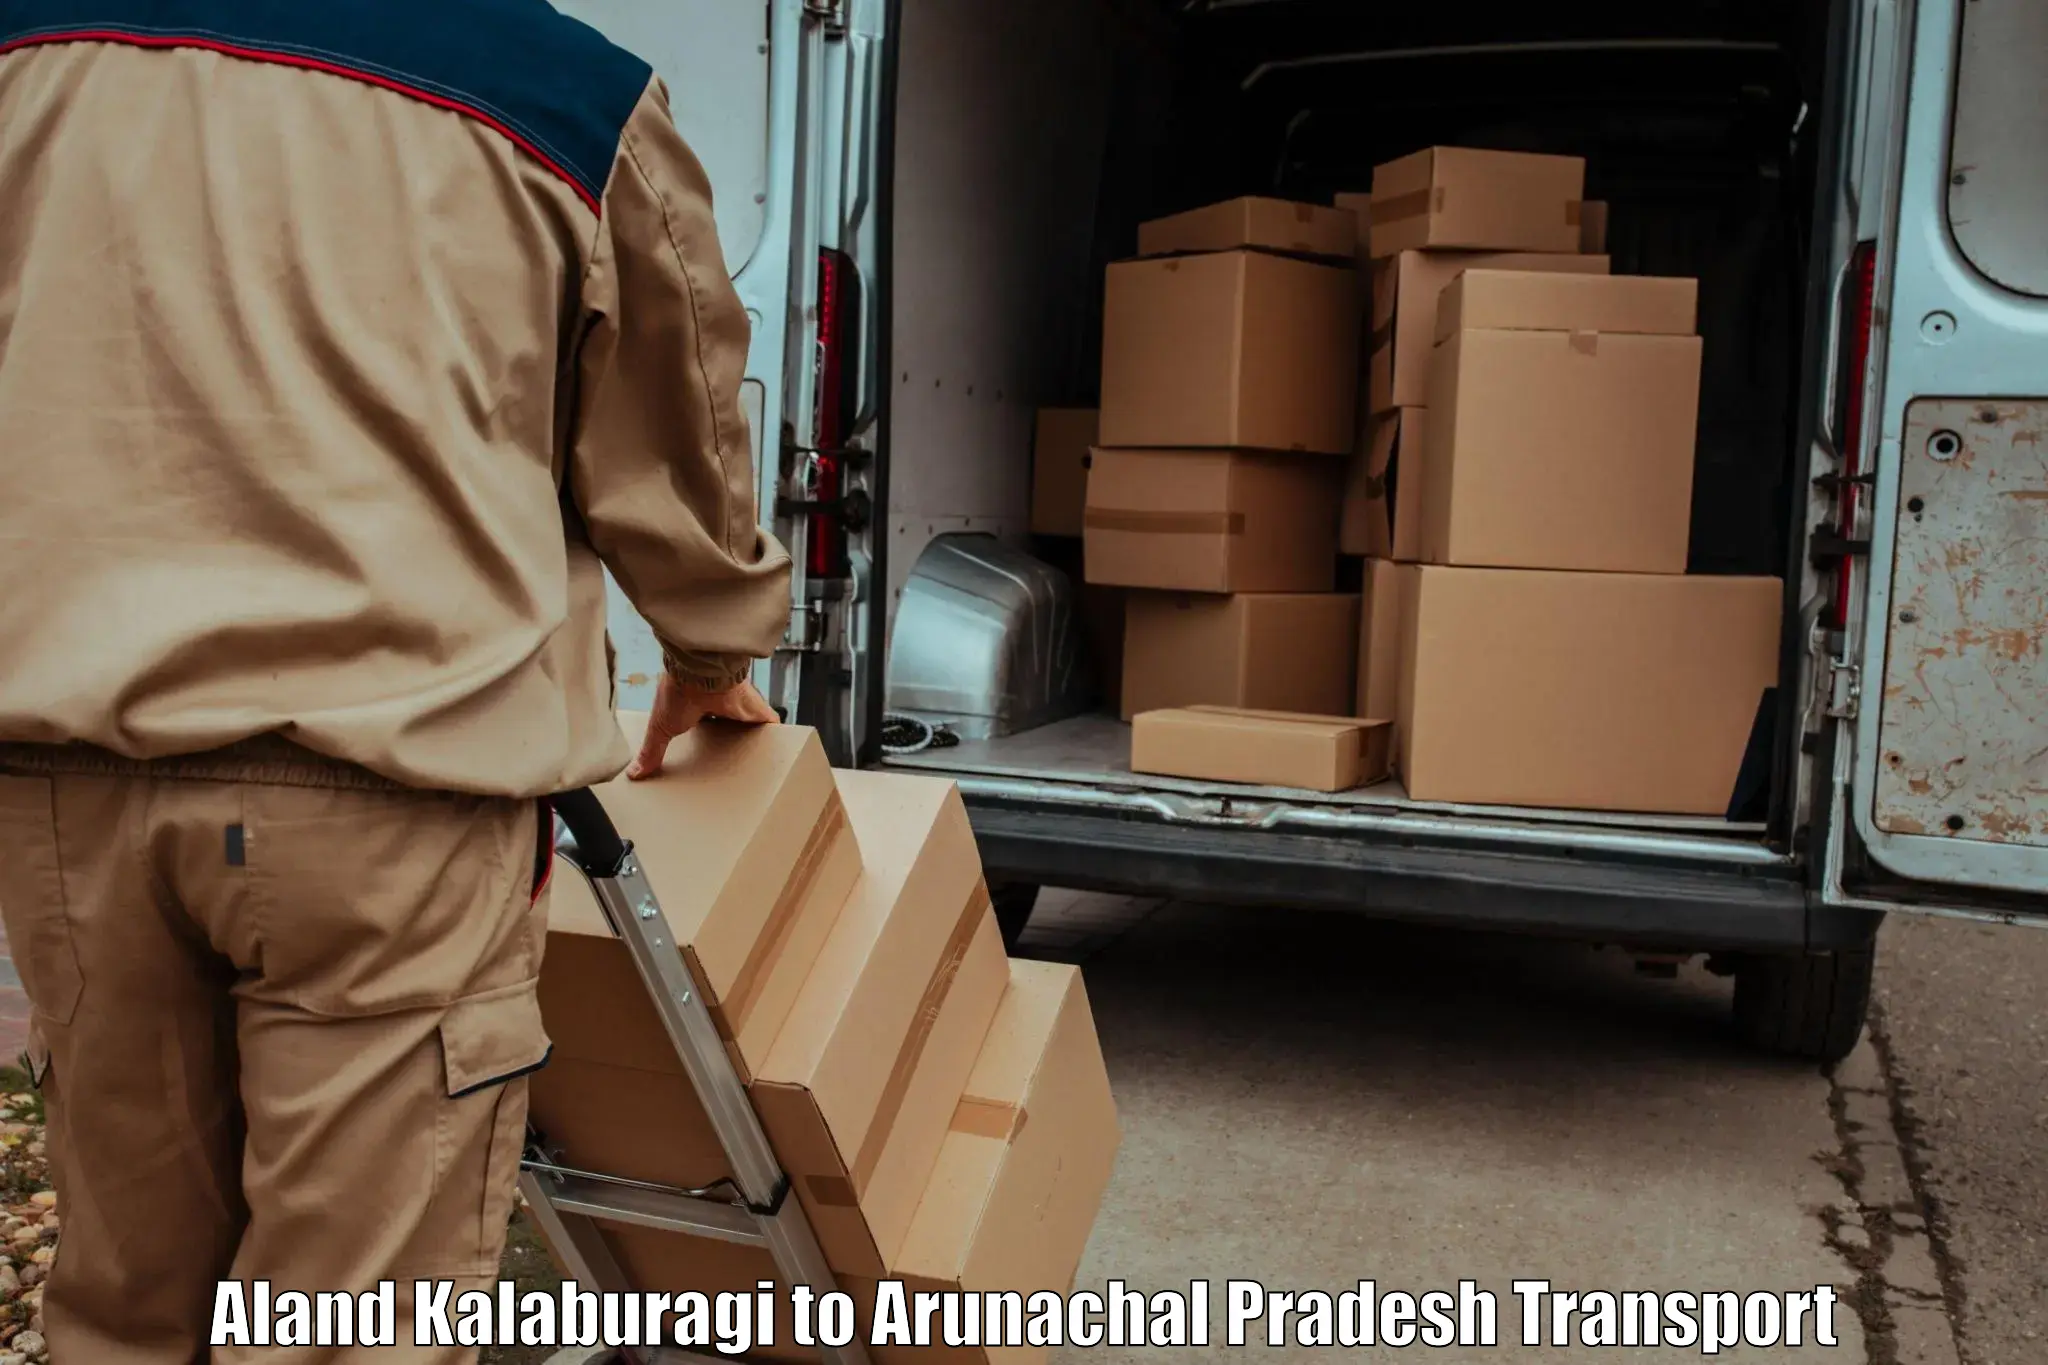 Shipping partner Aland Kalaburagi to Lohit